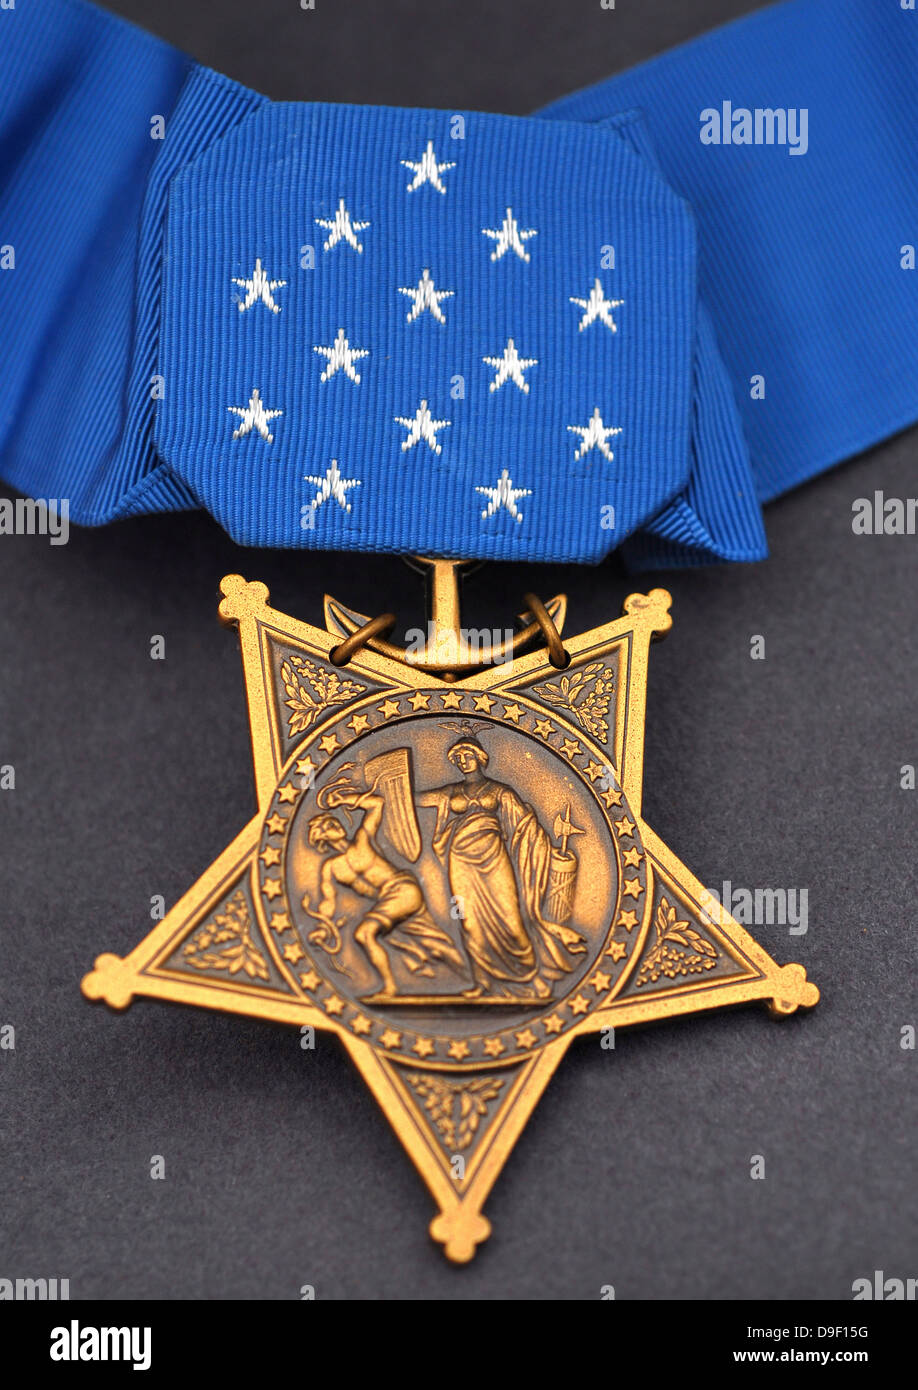 Close-up de la medalla de honor otorgado a Navy SEALs, la más alta condecoración militar otorgada por el gobierno de los EE.UU. Foto de stock